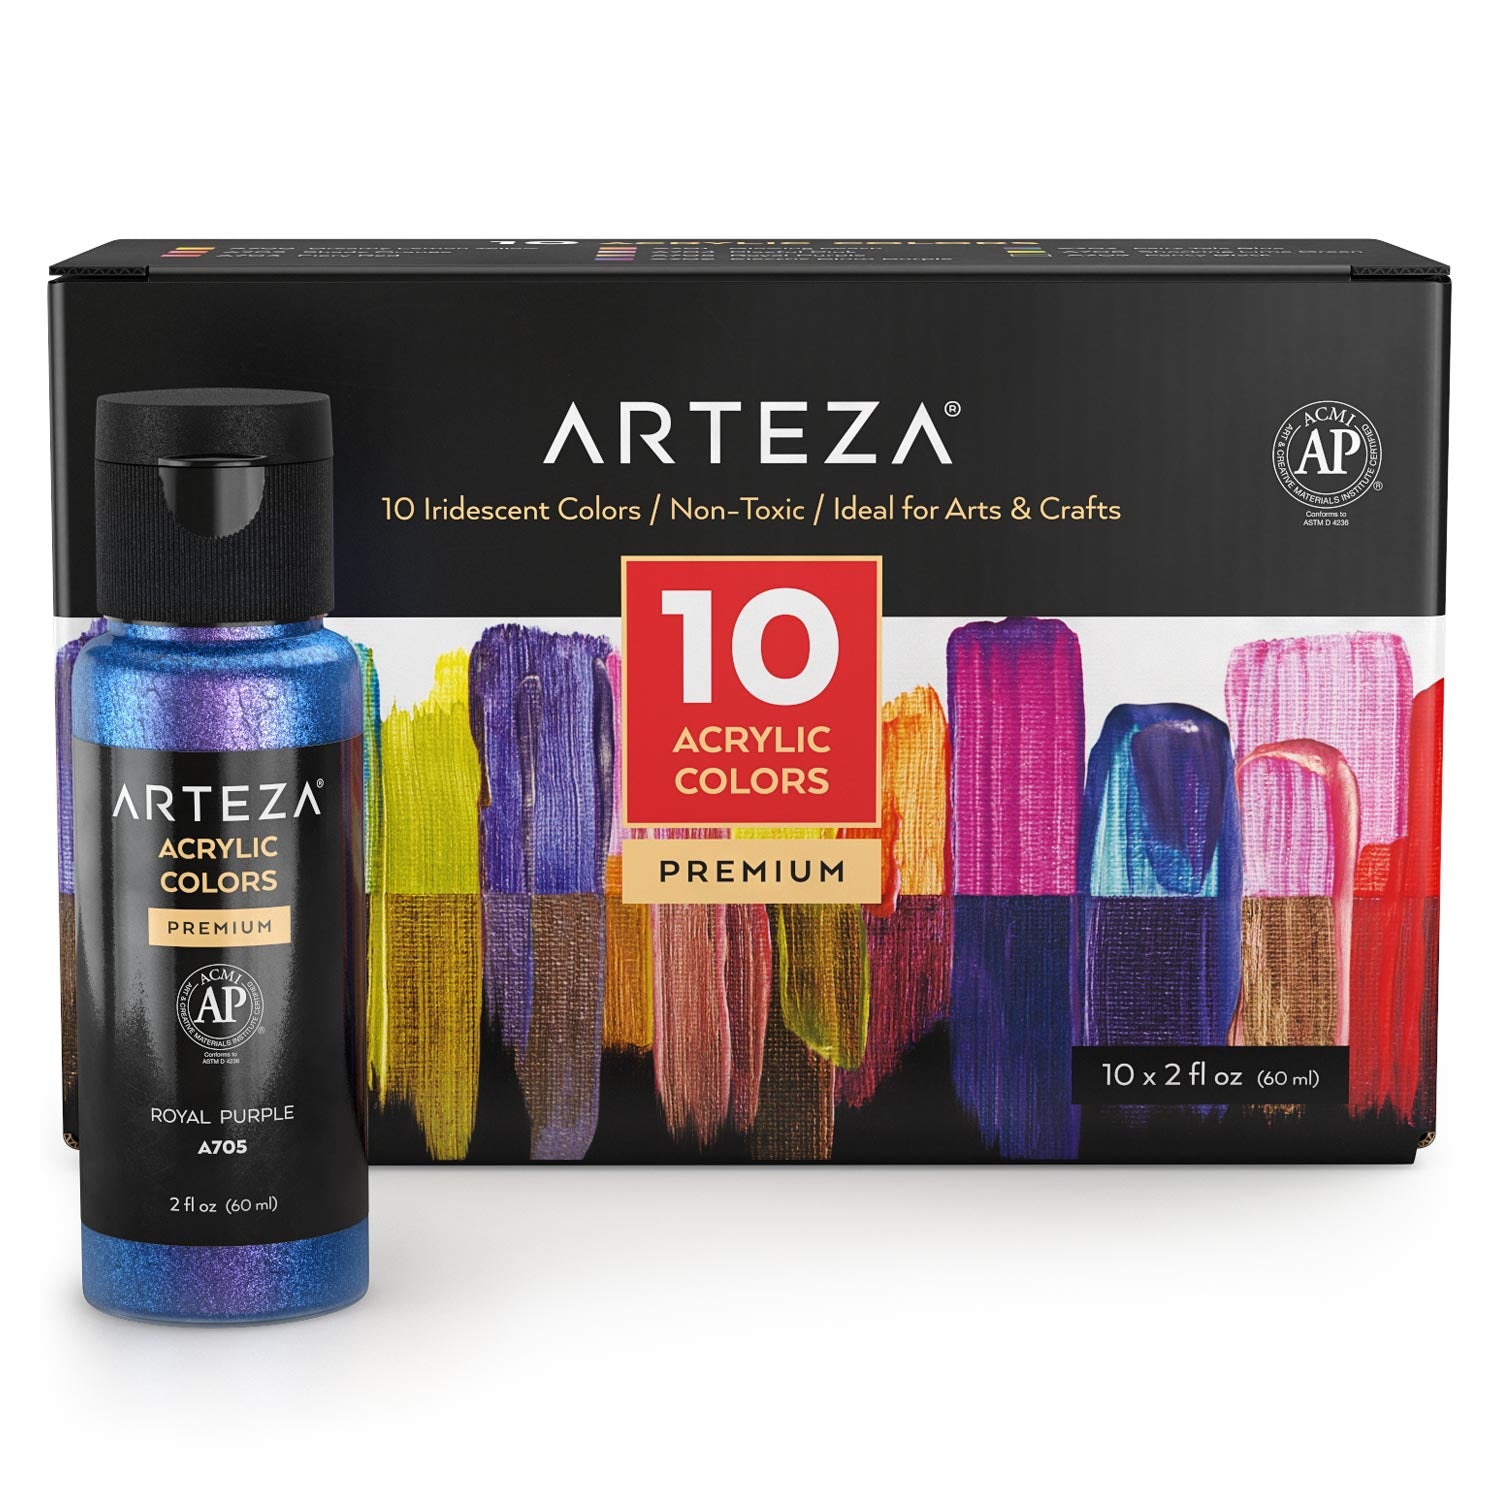 Arteza Acrylic Paint, Iridescent, 60ml Bottles, Set of 10